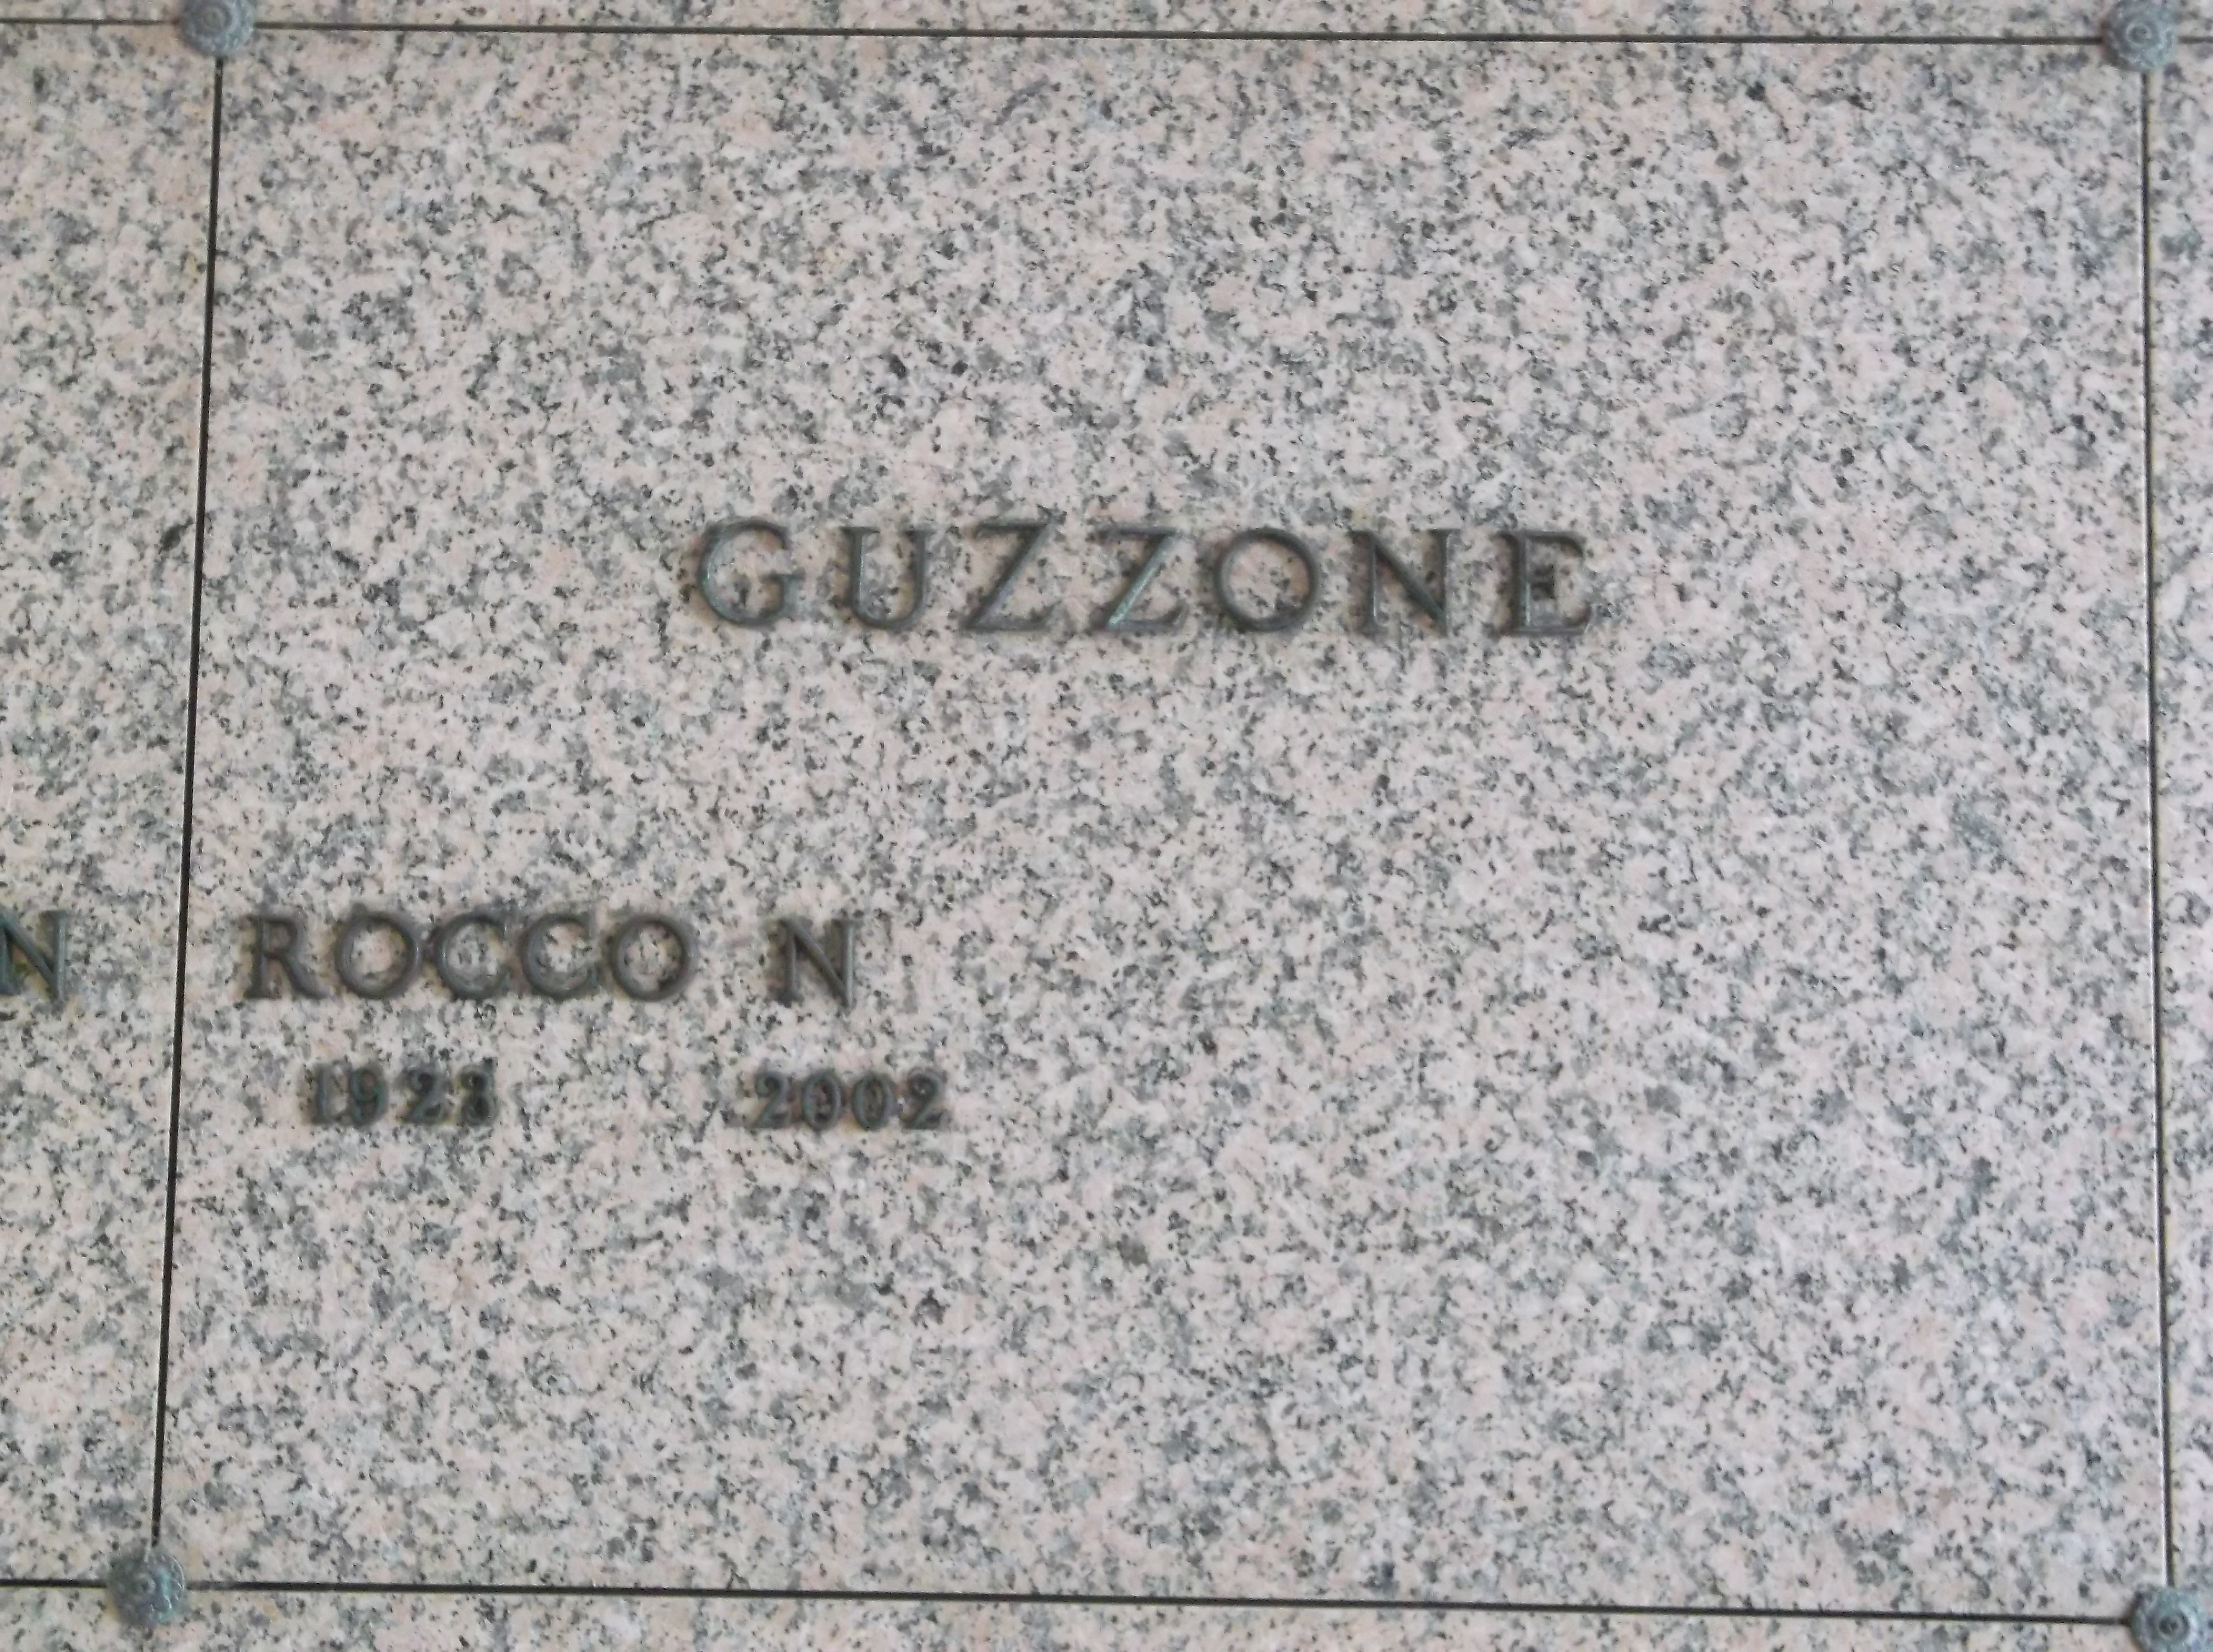 Rocco N Guzzone